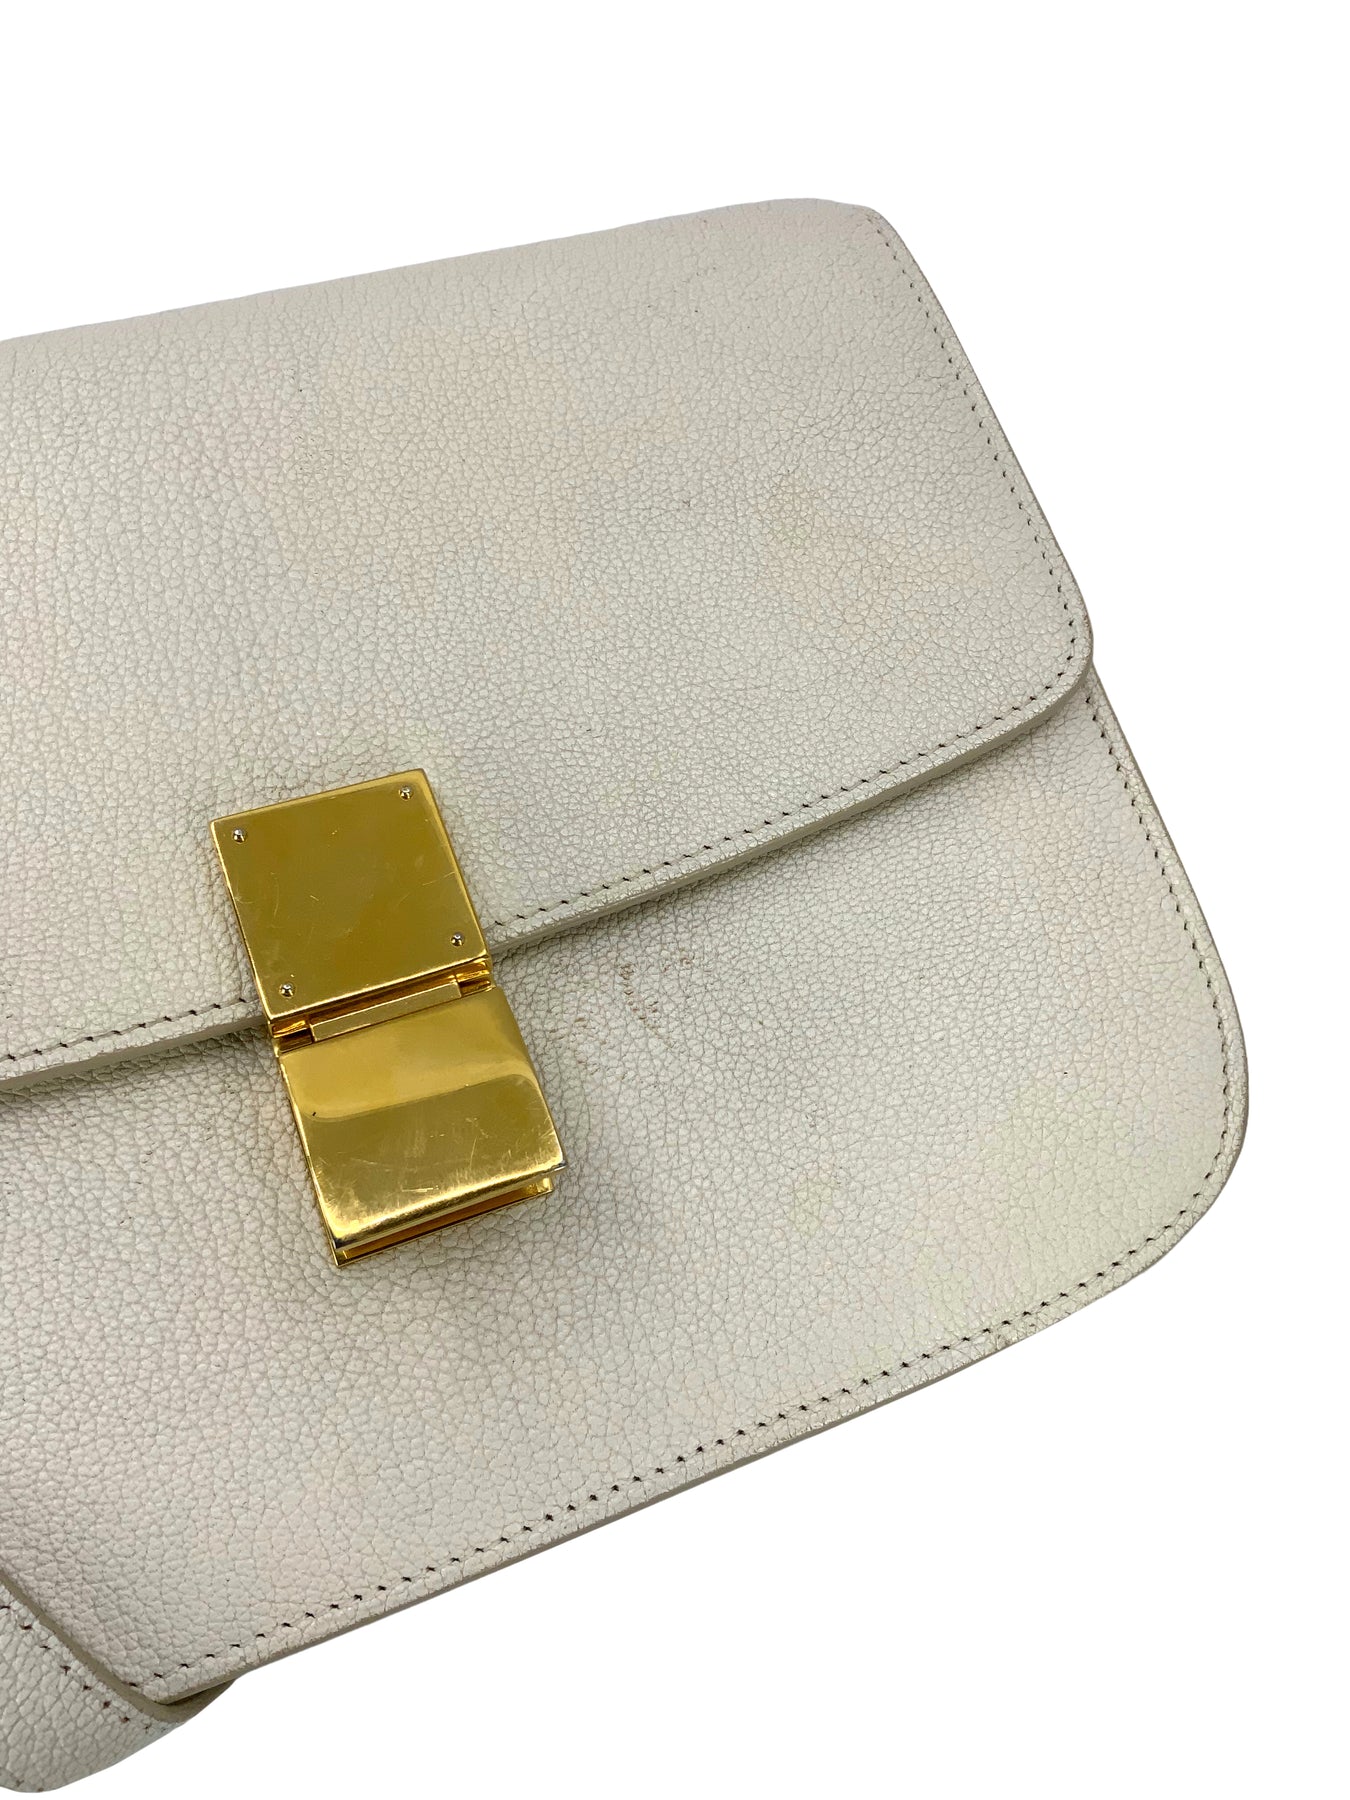 Celine Medium Classic Box Flap Bag